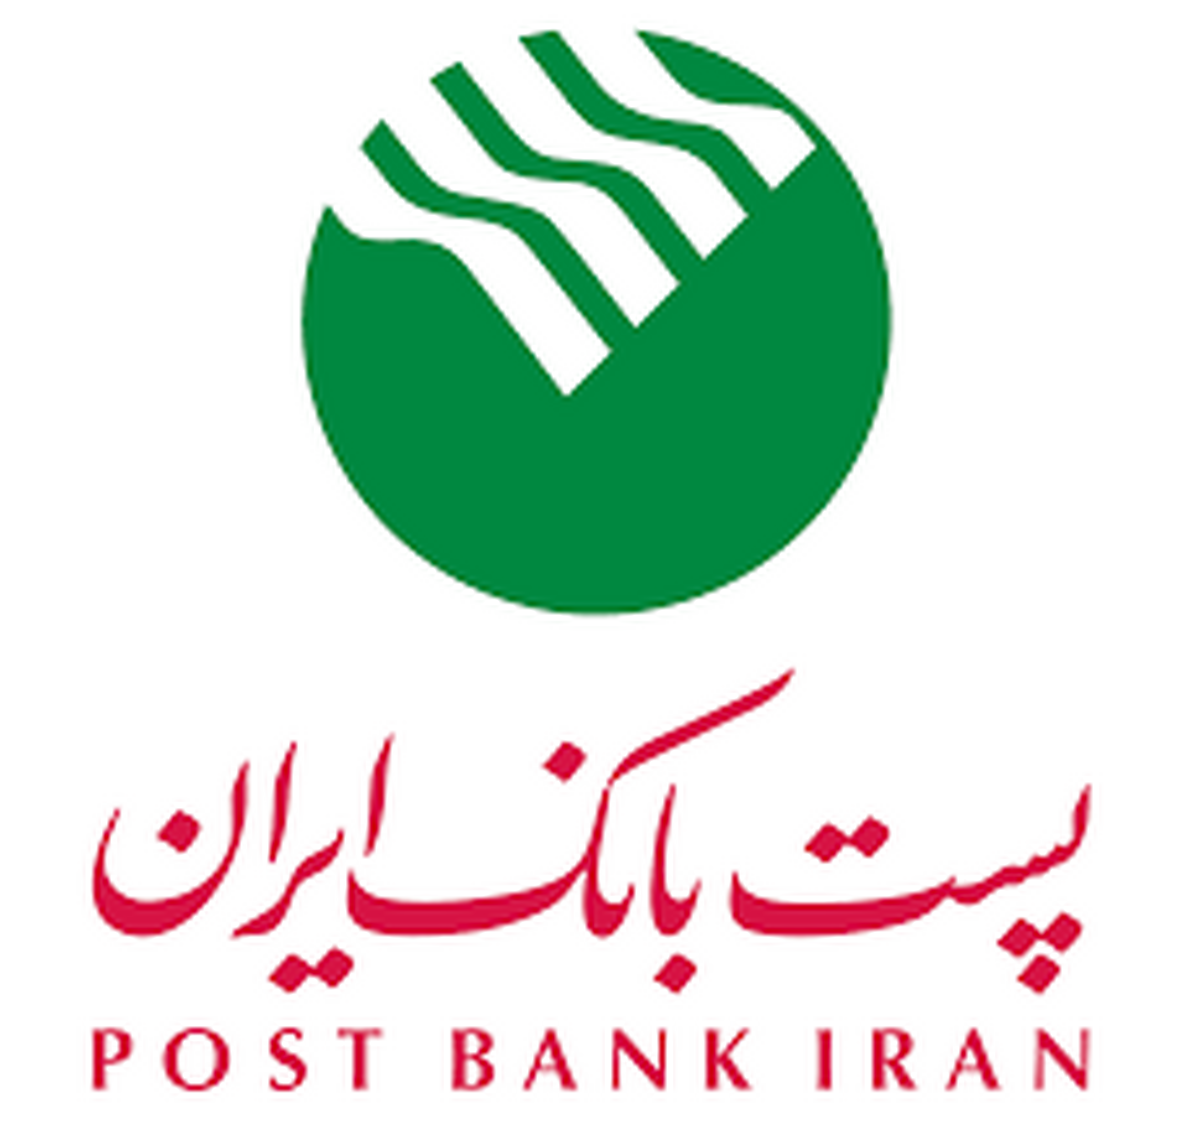 معاونت سازمان و برنامه ریزی پست بانک ایران، ساعت کاری واحد‌های بانک از ۱۶ خرداد ماه تا ۱۵ شهریور ماه را اعلام کرد